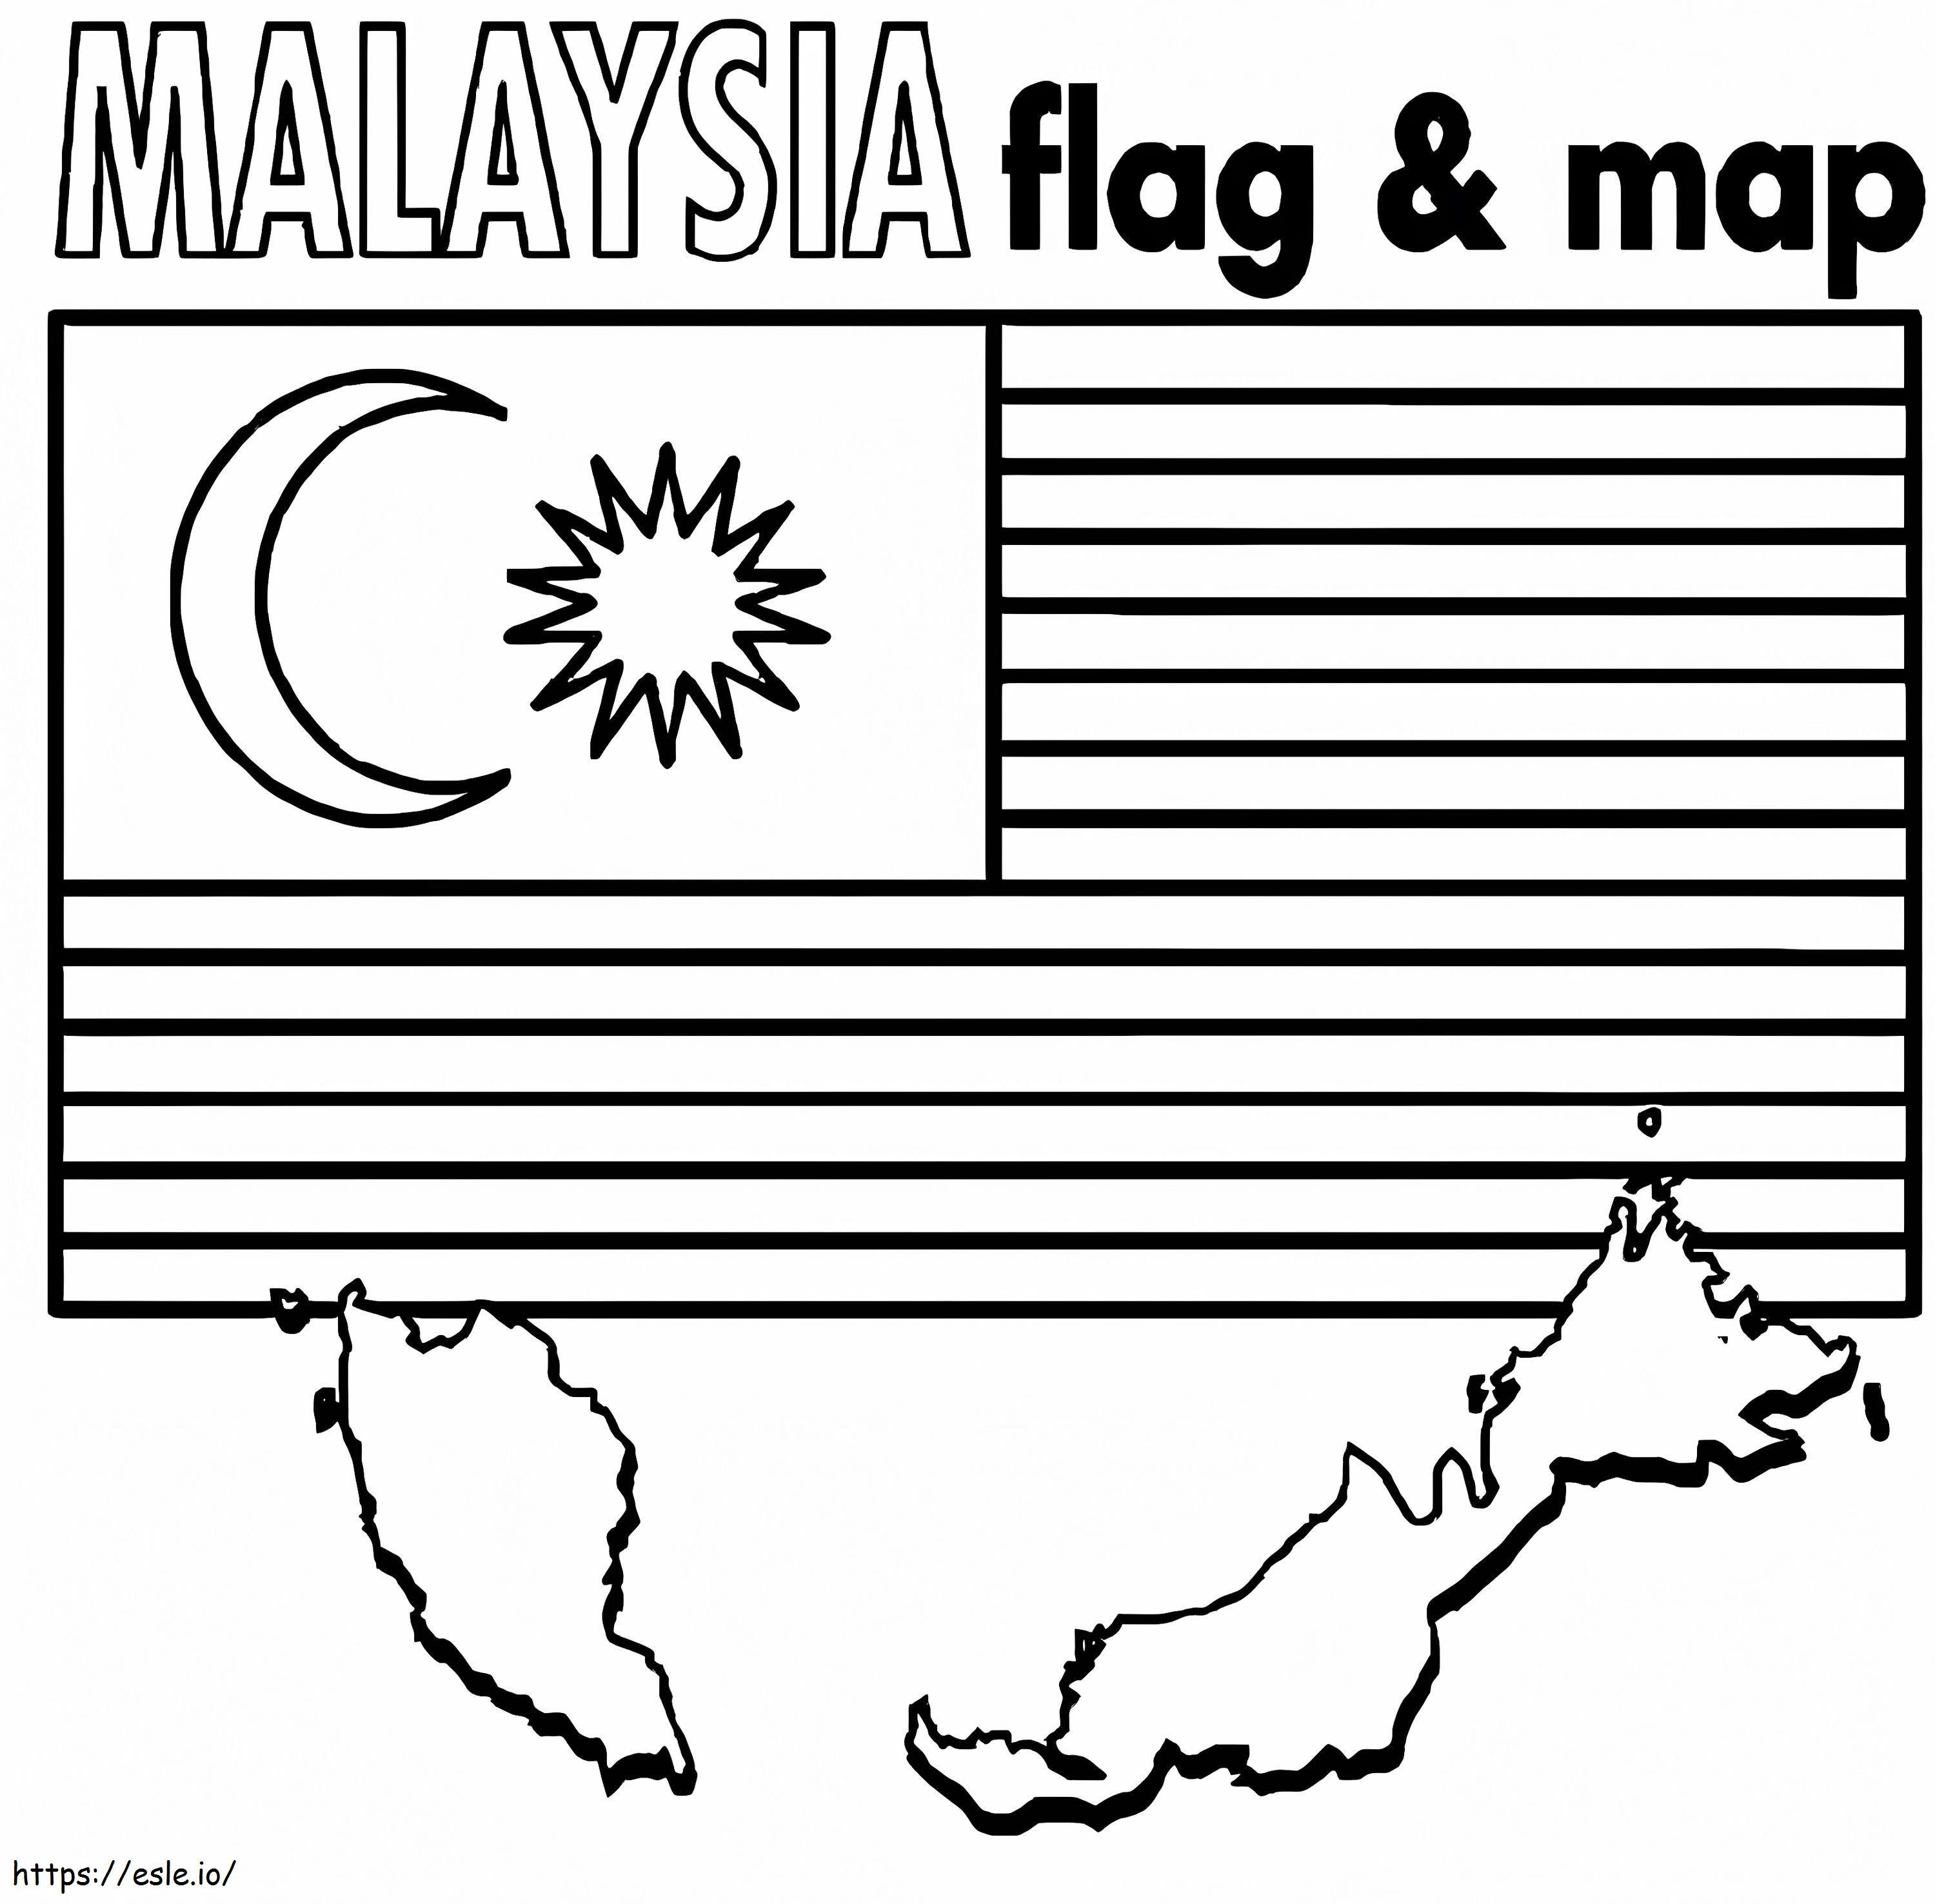 Peta dan Bendera Malaysia Gambar Mewarnai